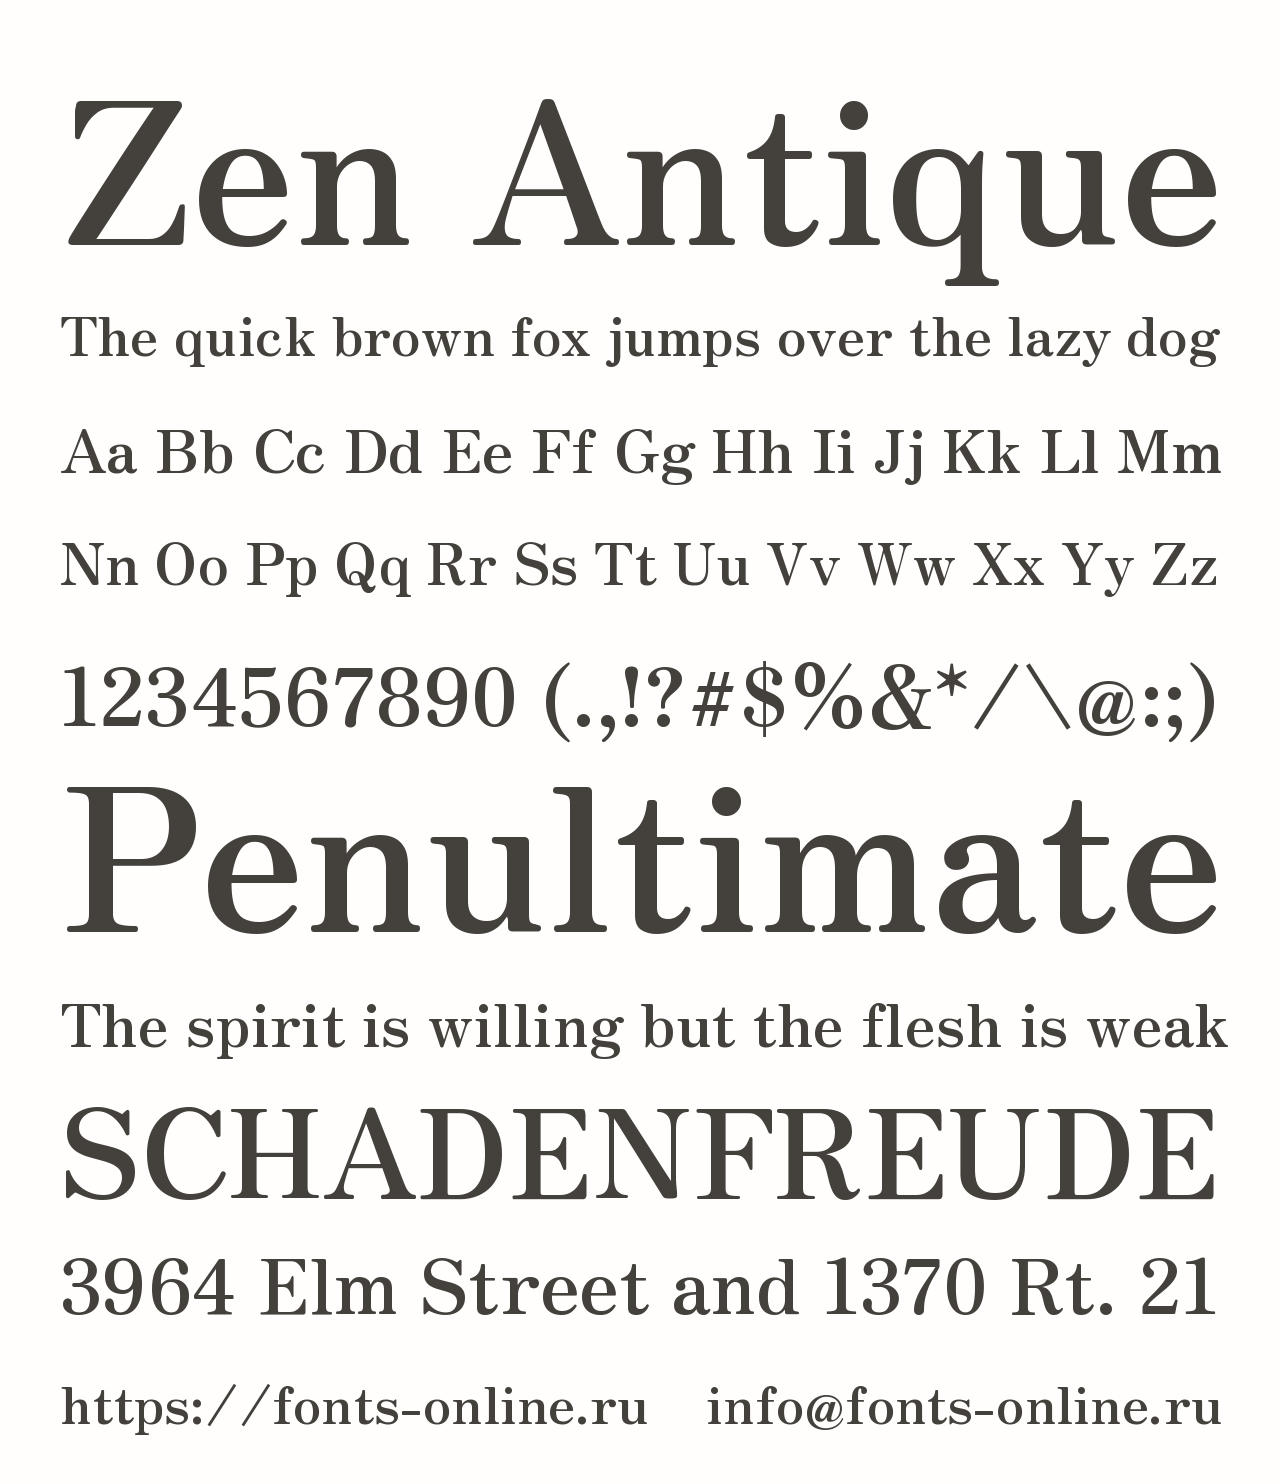 Шрифт Zen Antique